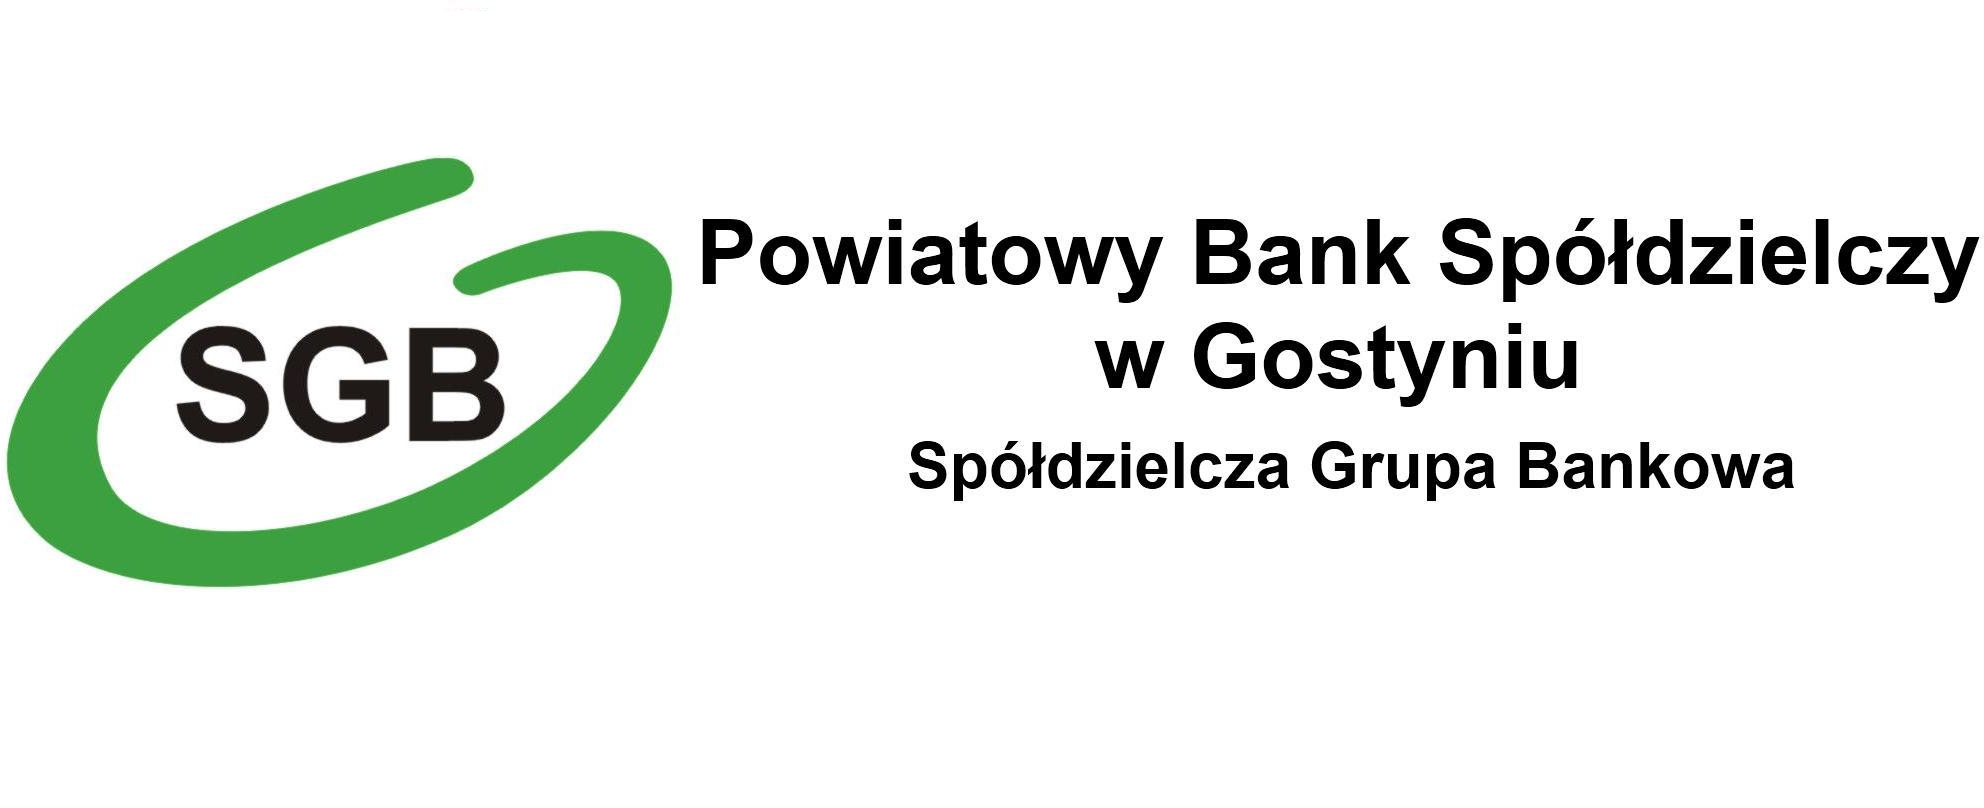 Kalkulator lokat - Powiatowy Bank Spółdzielczy w Gostyniu